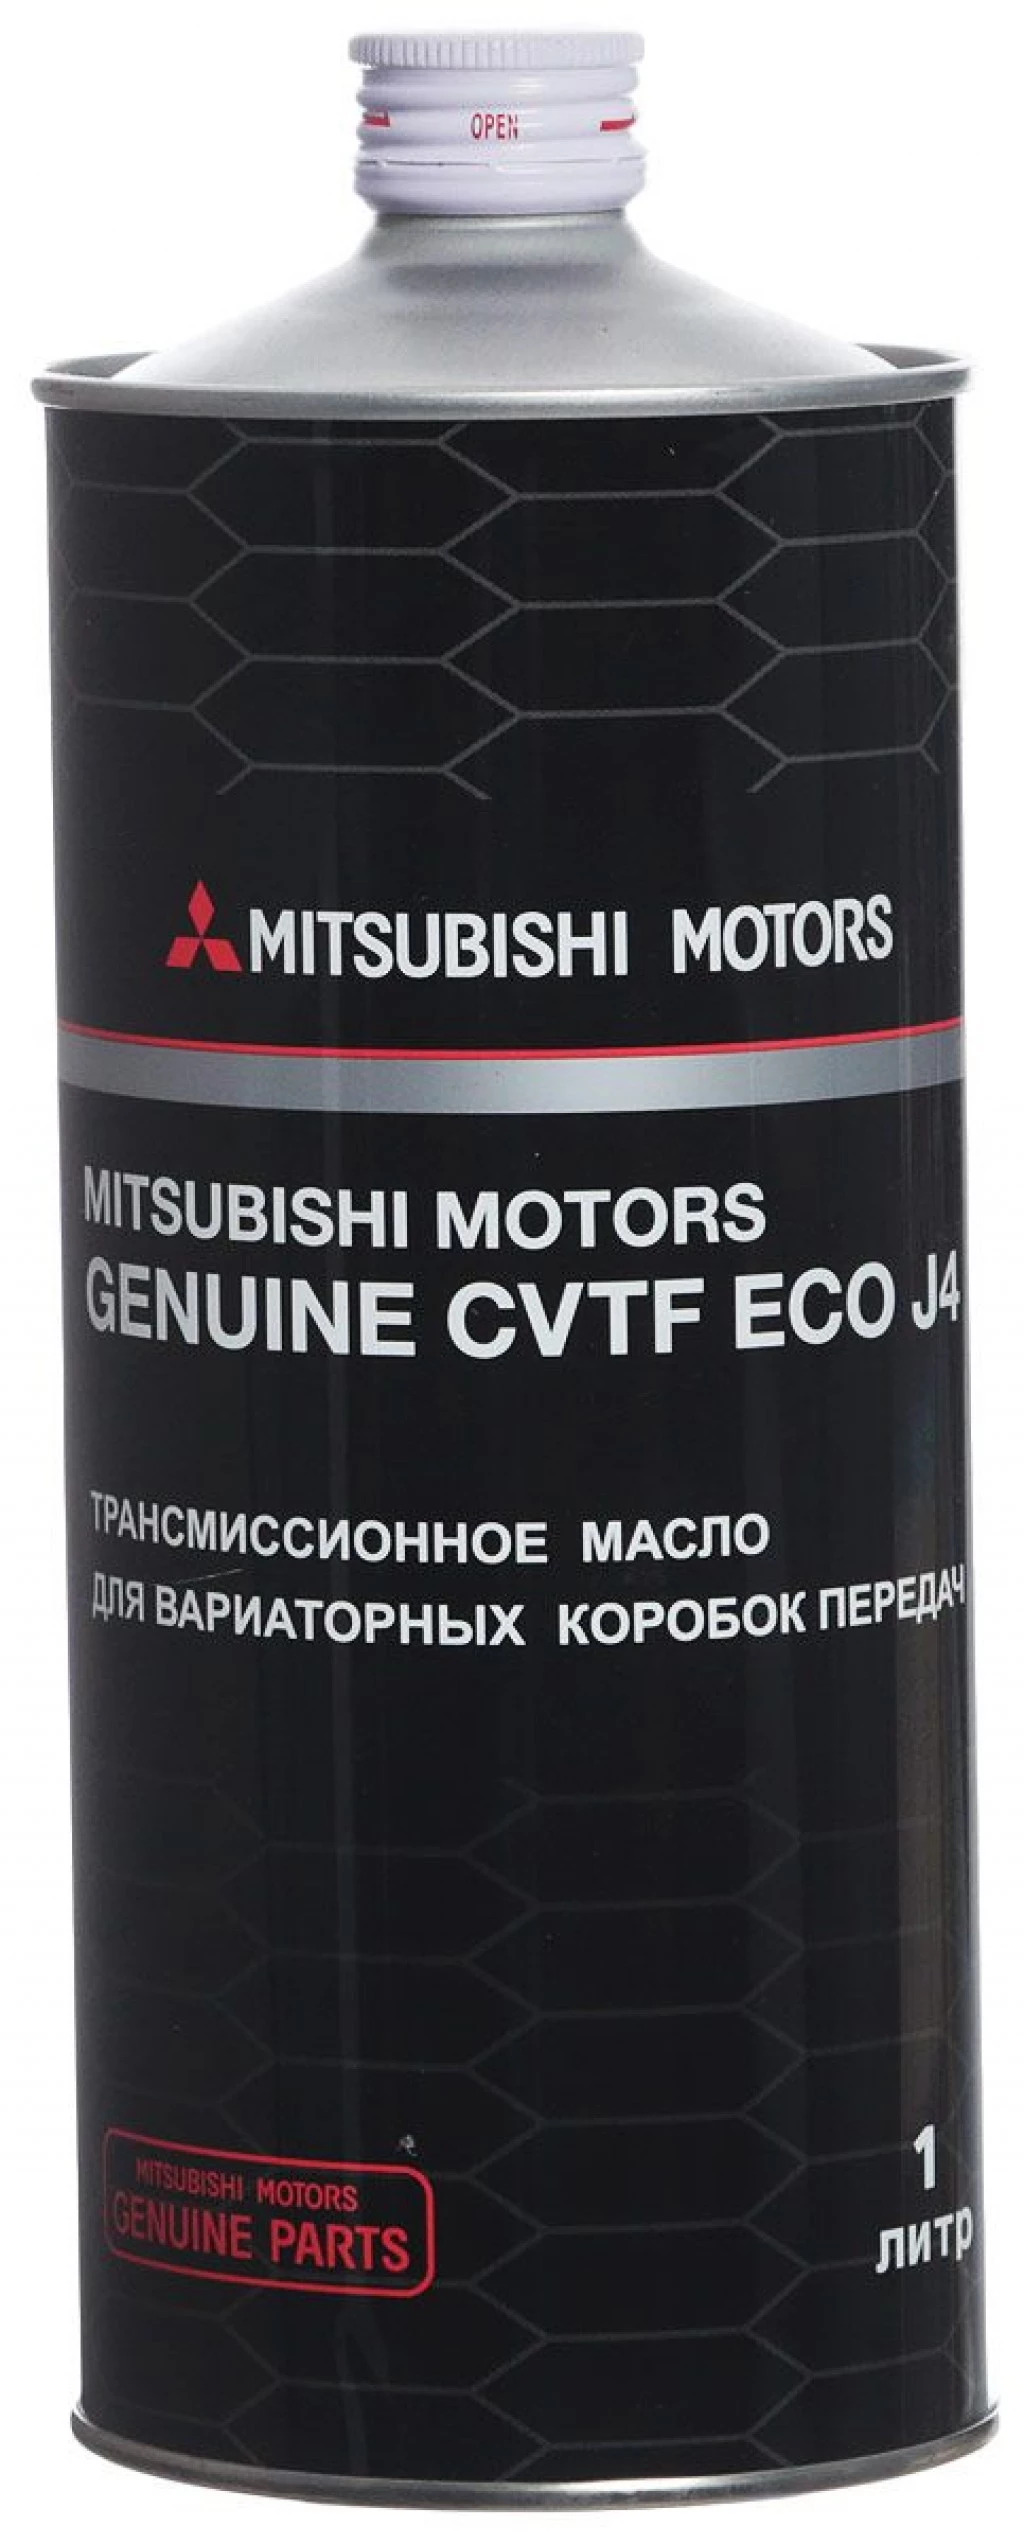 Масло трансмиссионное Mitsubishi ATF CVT Fluid J4 синтетическое 1 л